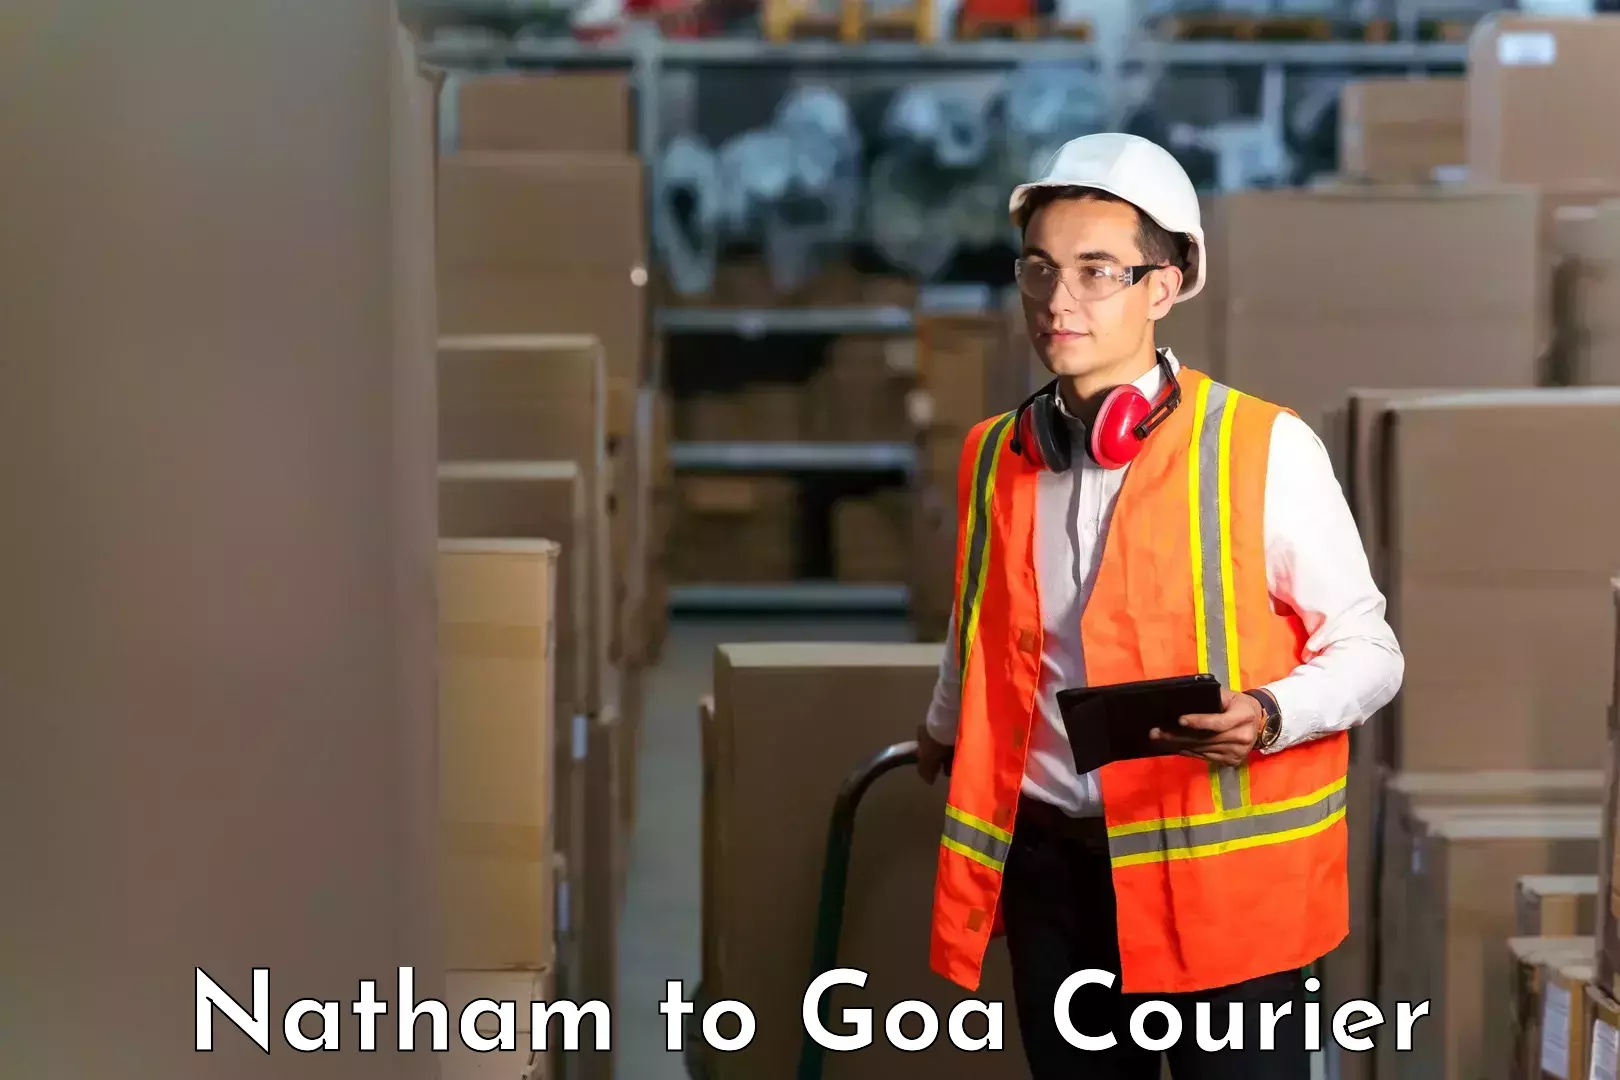 Next-day freight services Natham to Goa University